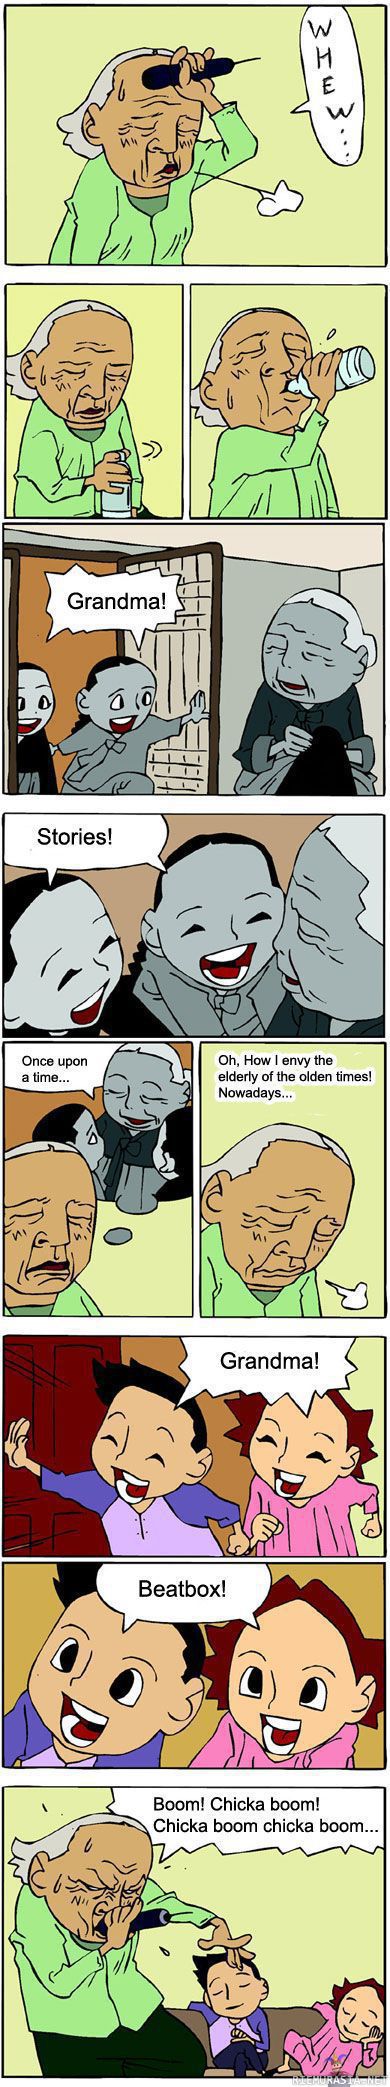 Mummon luona kylässä - etelä-korealaista sarjakuvaa